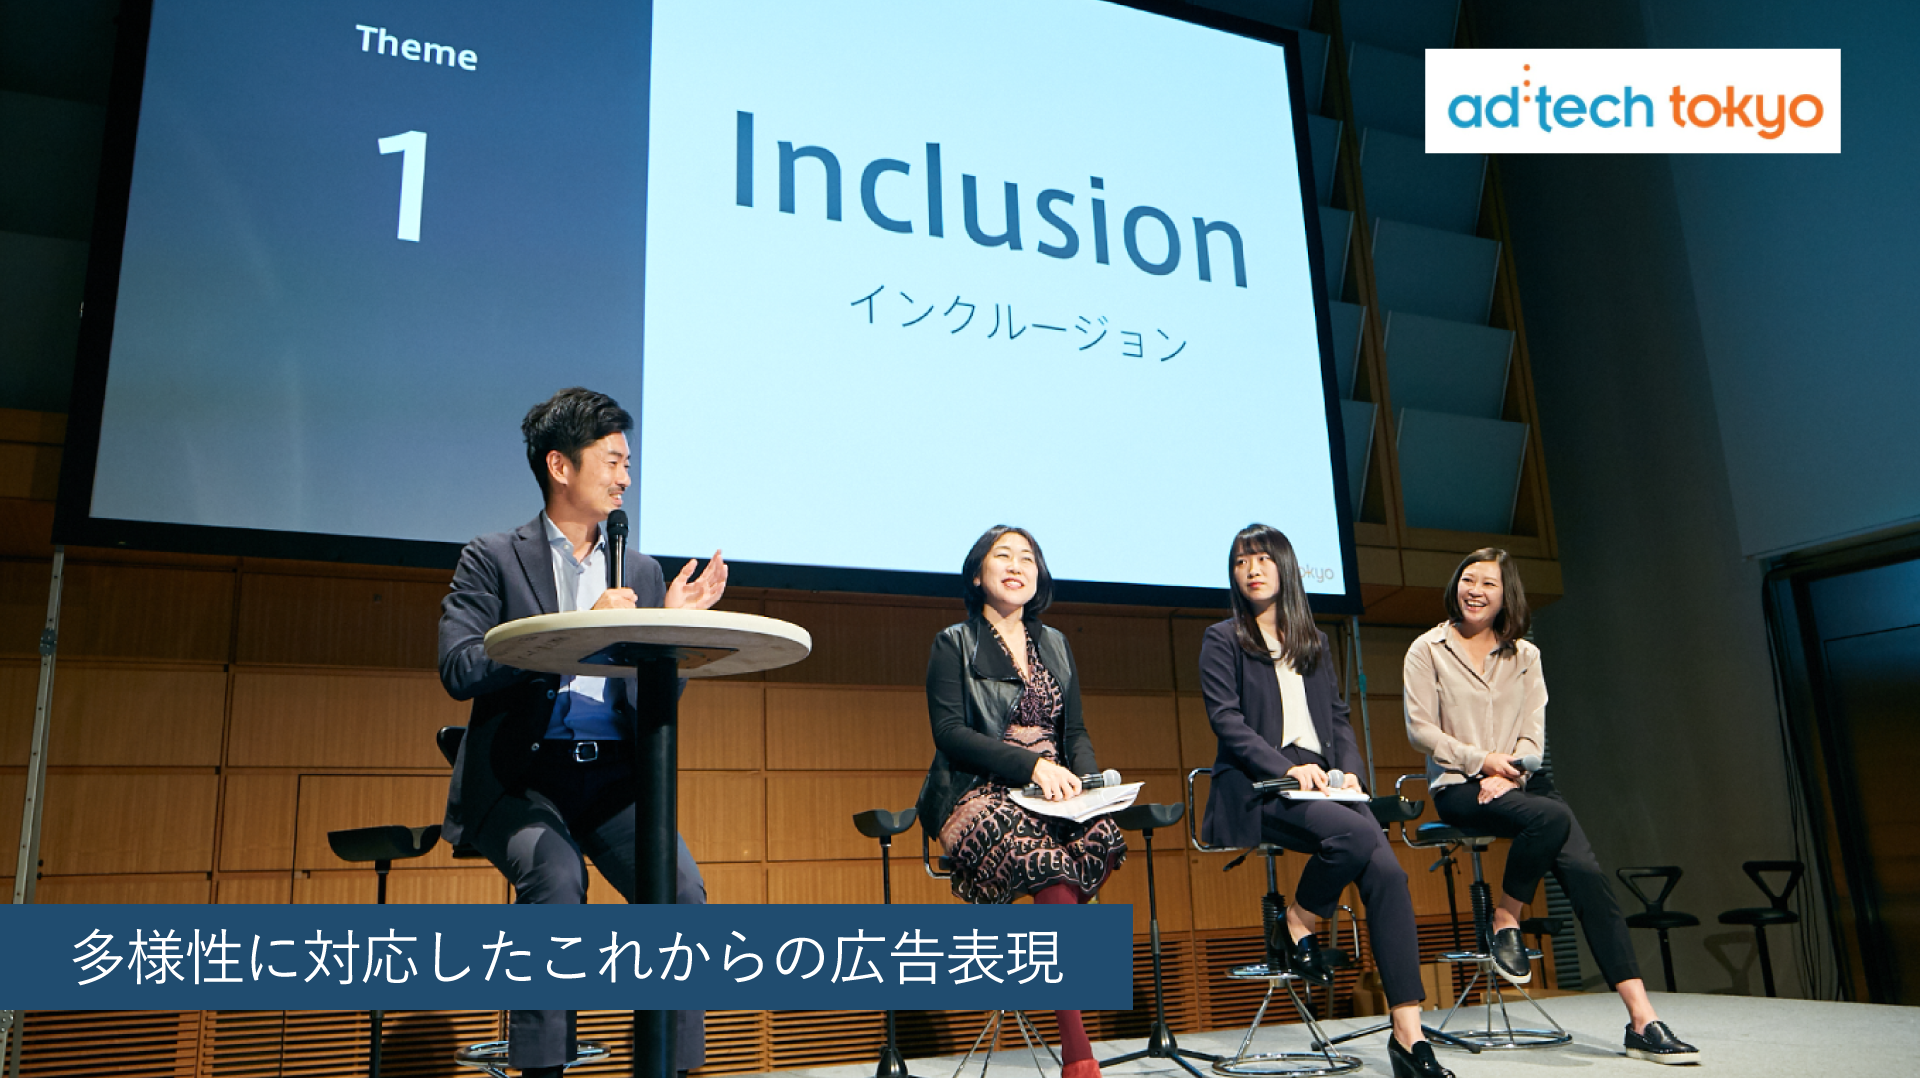 多様性に対応したこれからの広告表現 アドテック東京19レポート 生活者データ ドリブン マーケティング通信